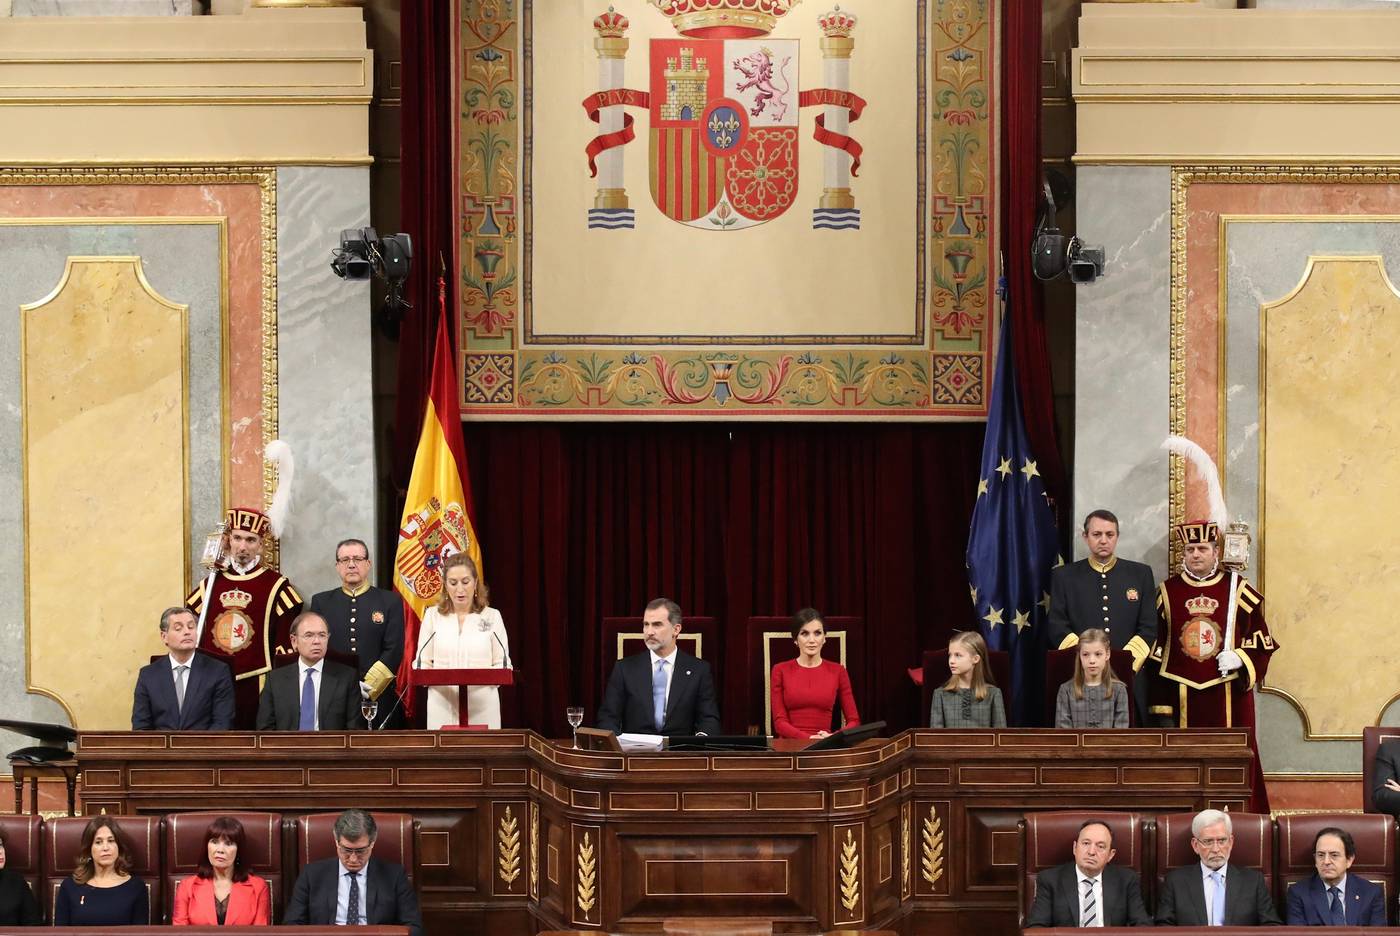 40 aniversario de la Constitución Española en el Congreso de los Diputados